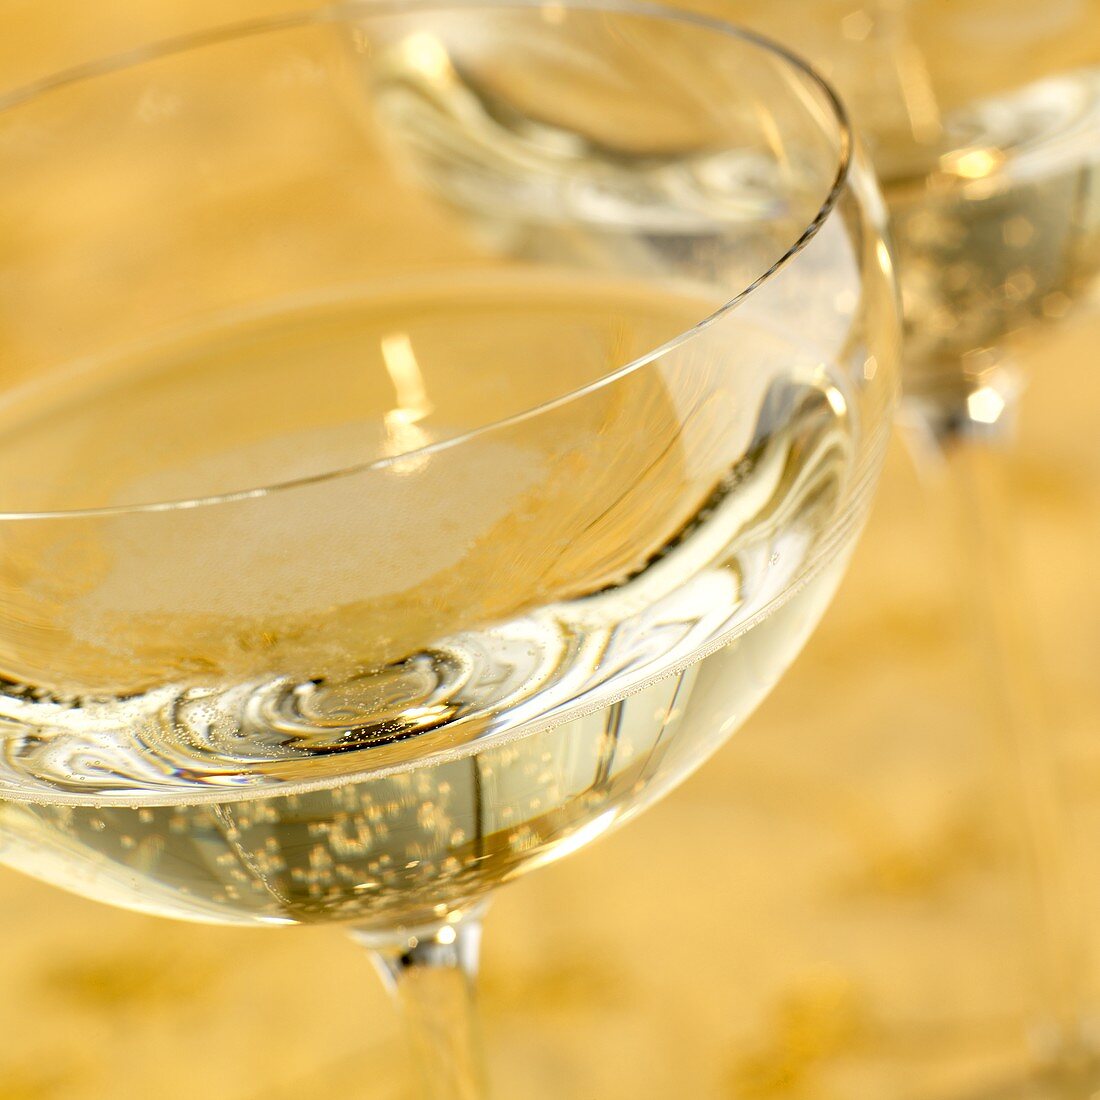 Zwei Gläser Champagner